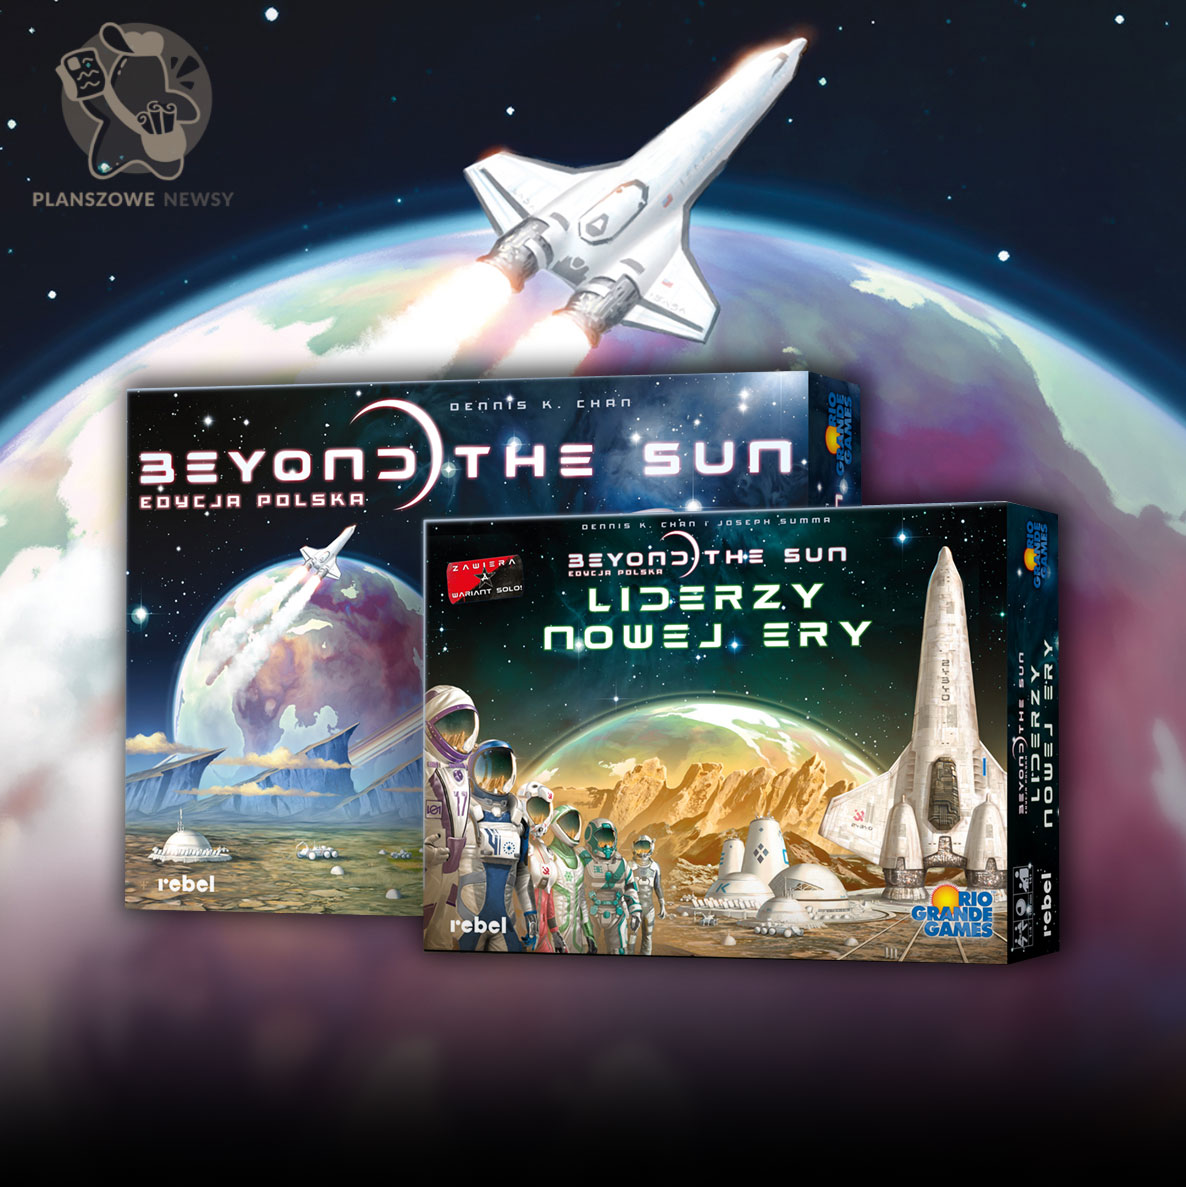 pudełka gry Beyond The Sun oraz dodatku do niej Nowi Liderzy